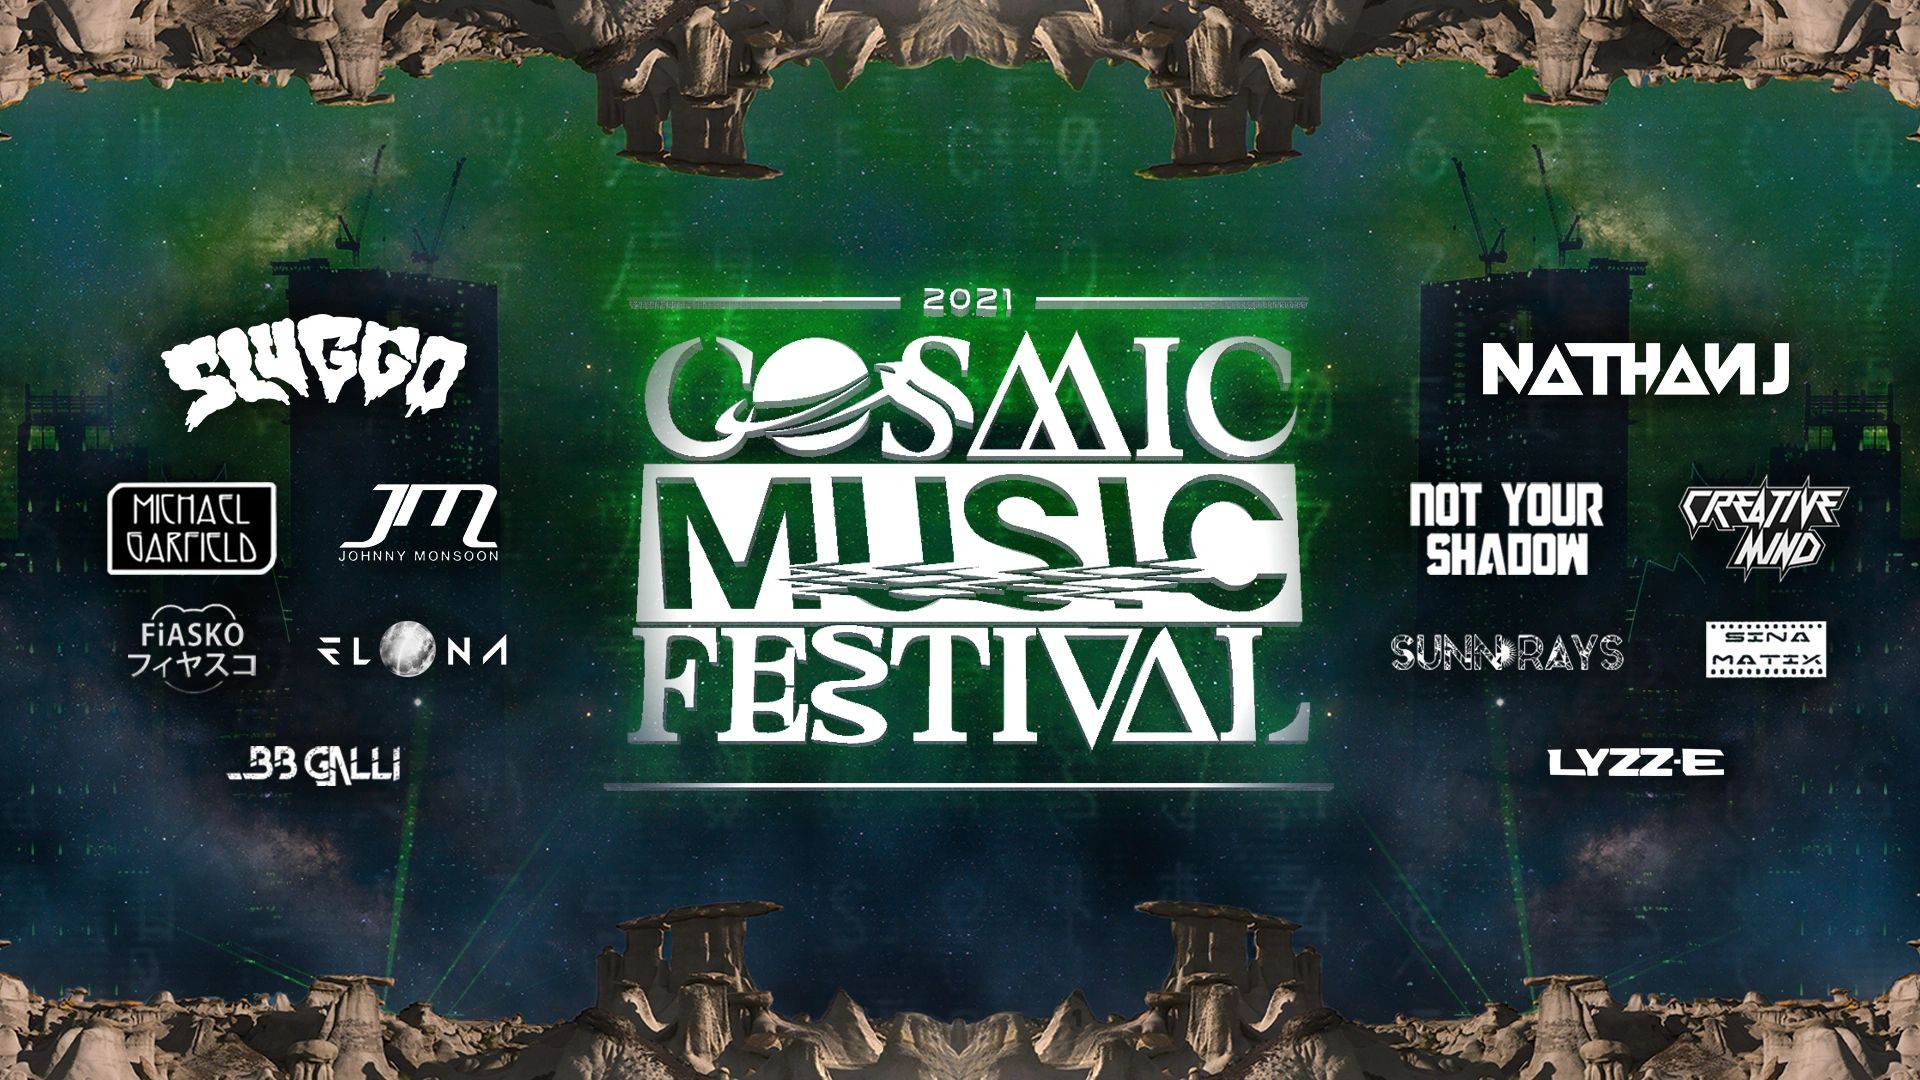 Cosmic Music Festival - Live Music, Art, Music Festival